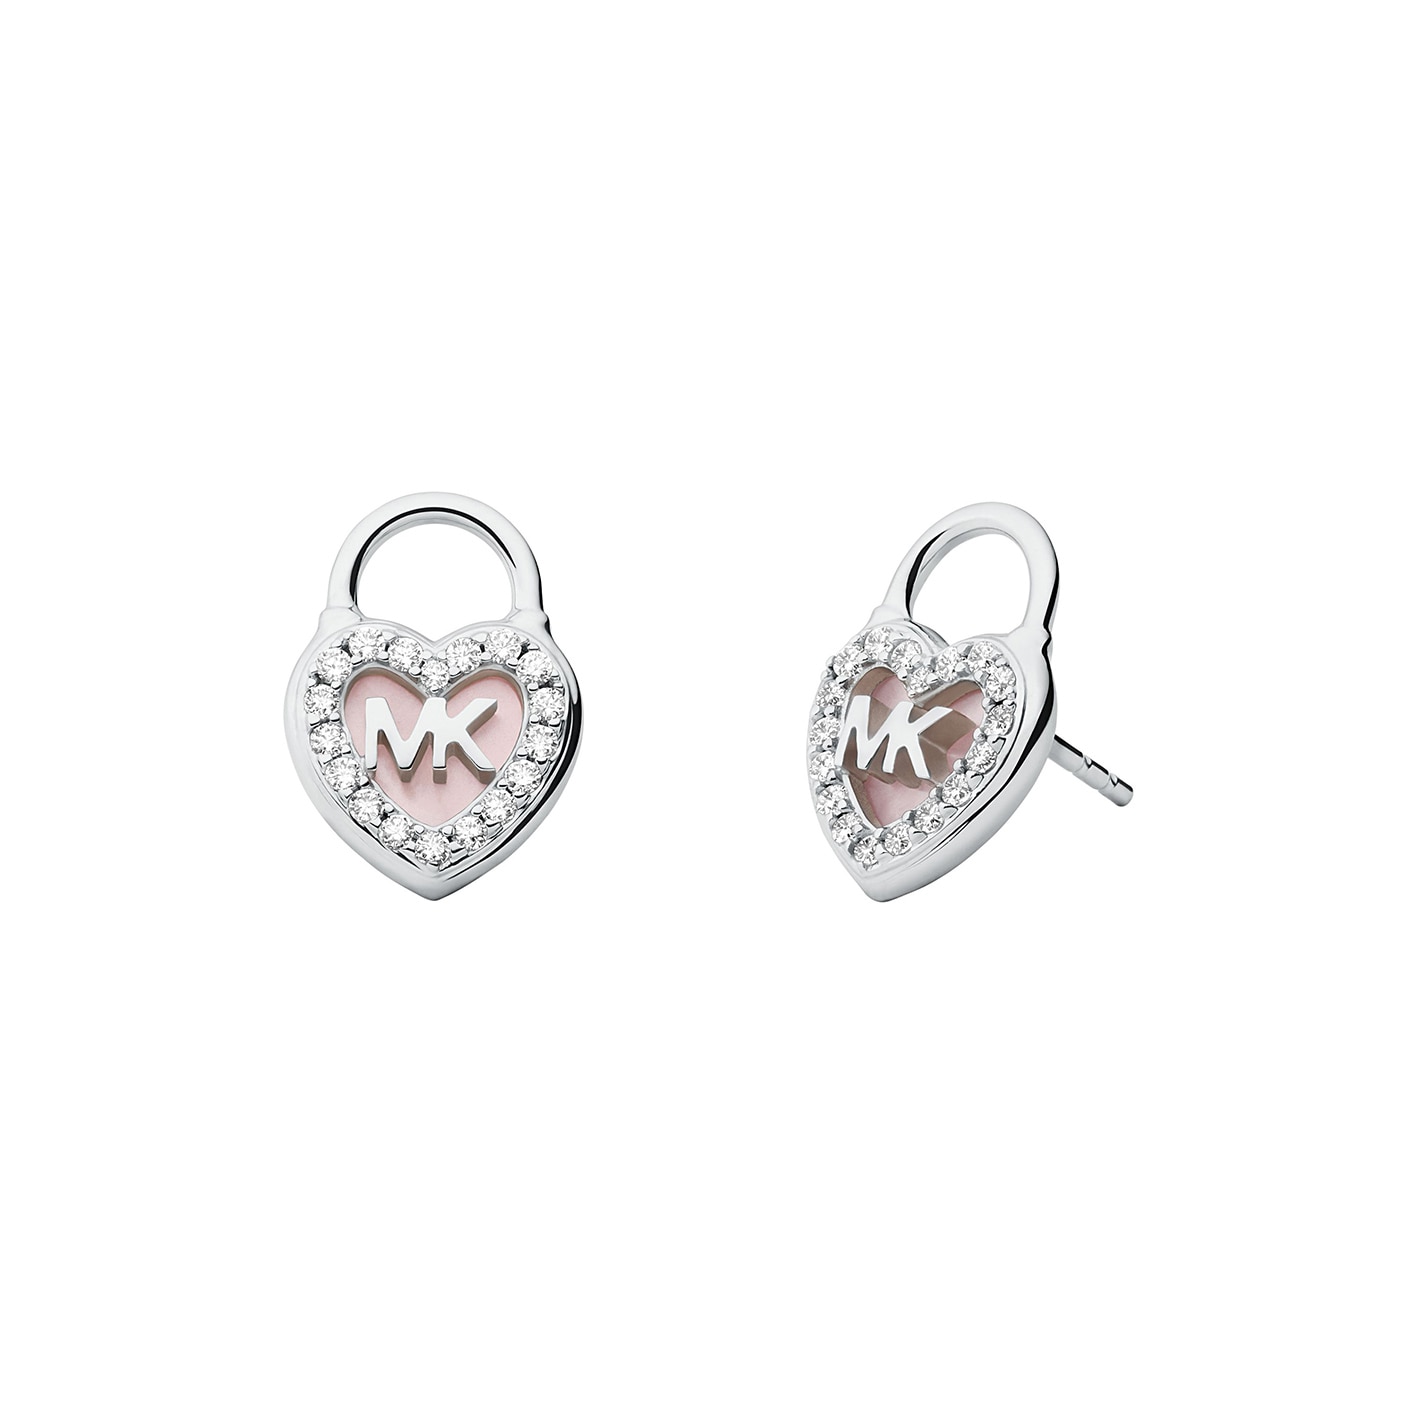 Premium earrings silver/pink